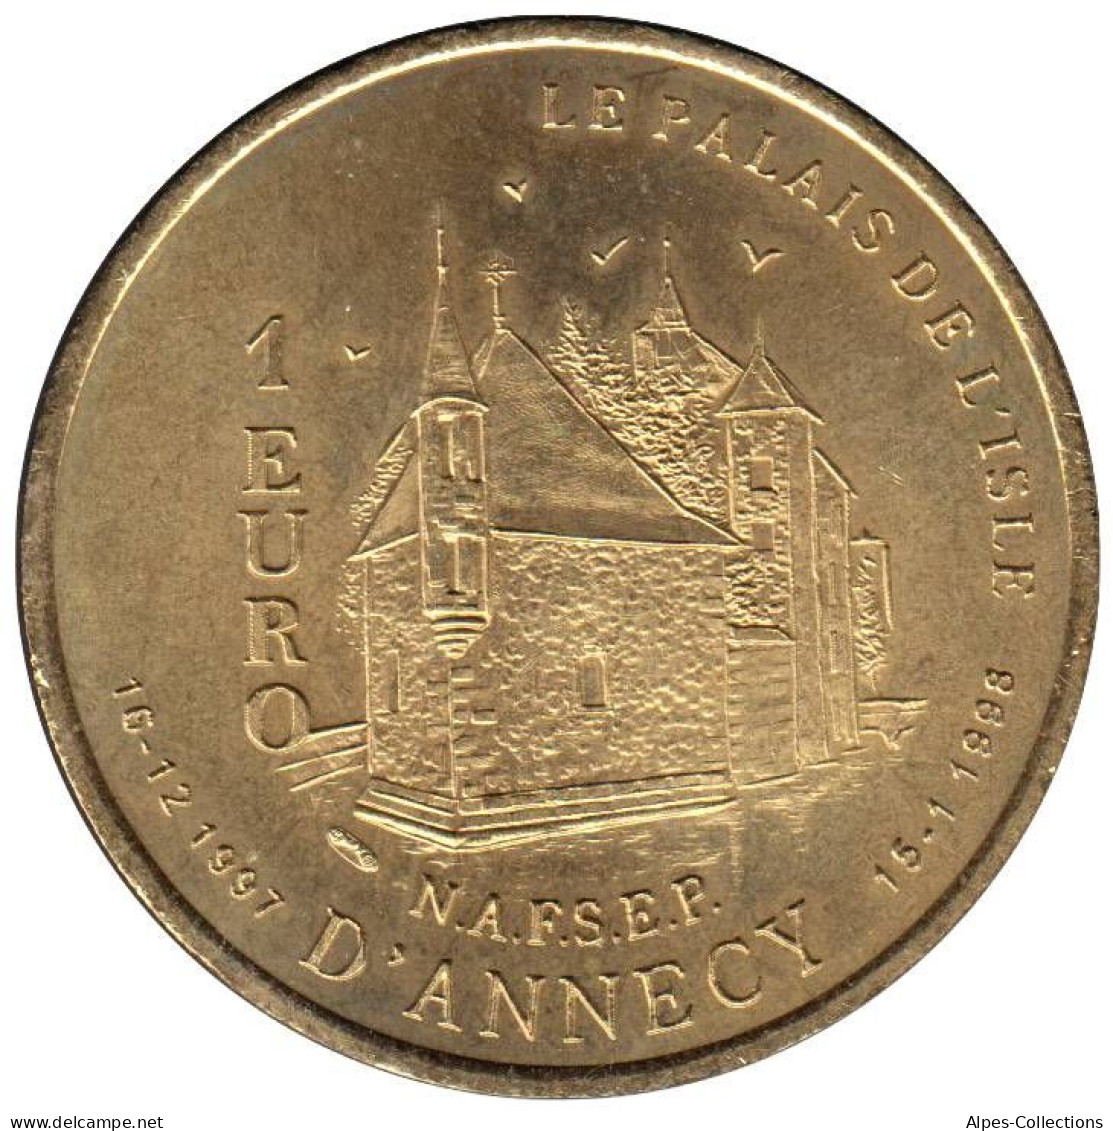 ANNECY - EU0010.1 - 1 EURO DES VILLES - Réf: T233 - 1997 - Euros Des Villes